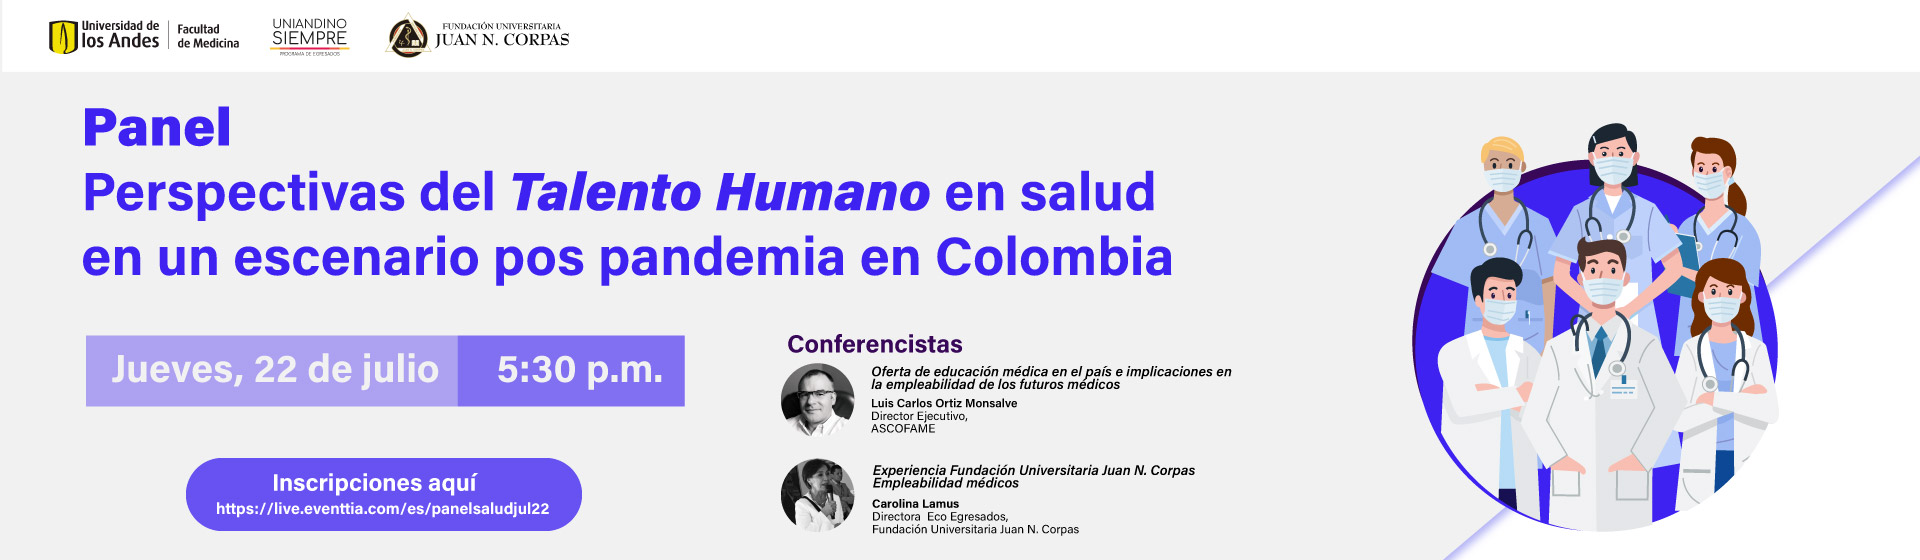 Panel: Perspectivas del Talento Humano en salud en un escenario pos pandemia en Colombia